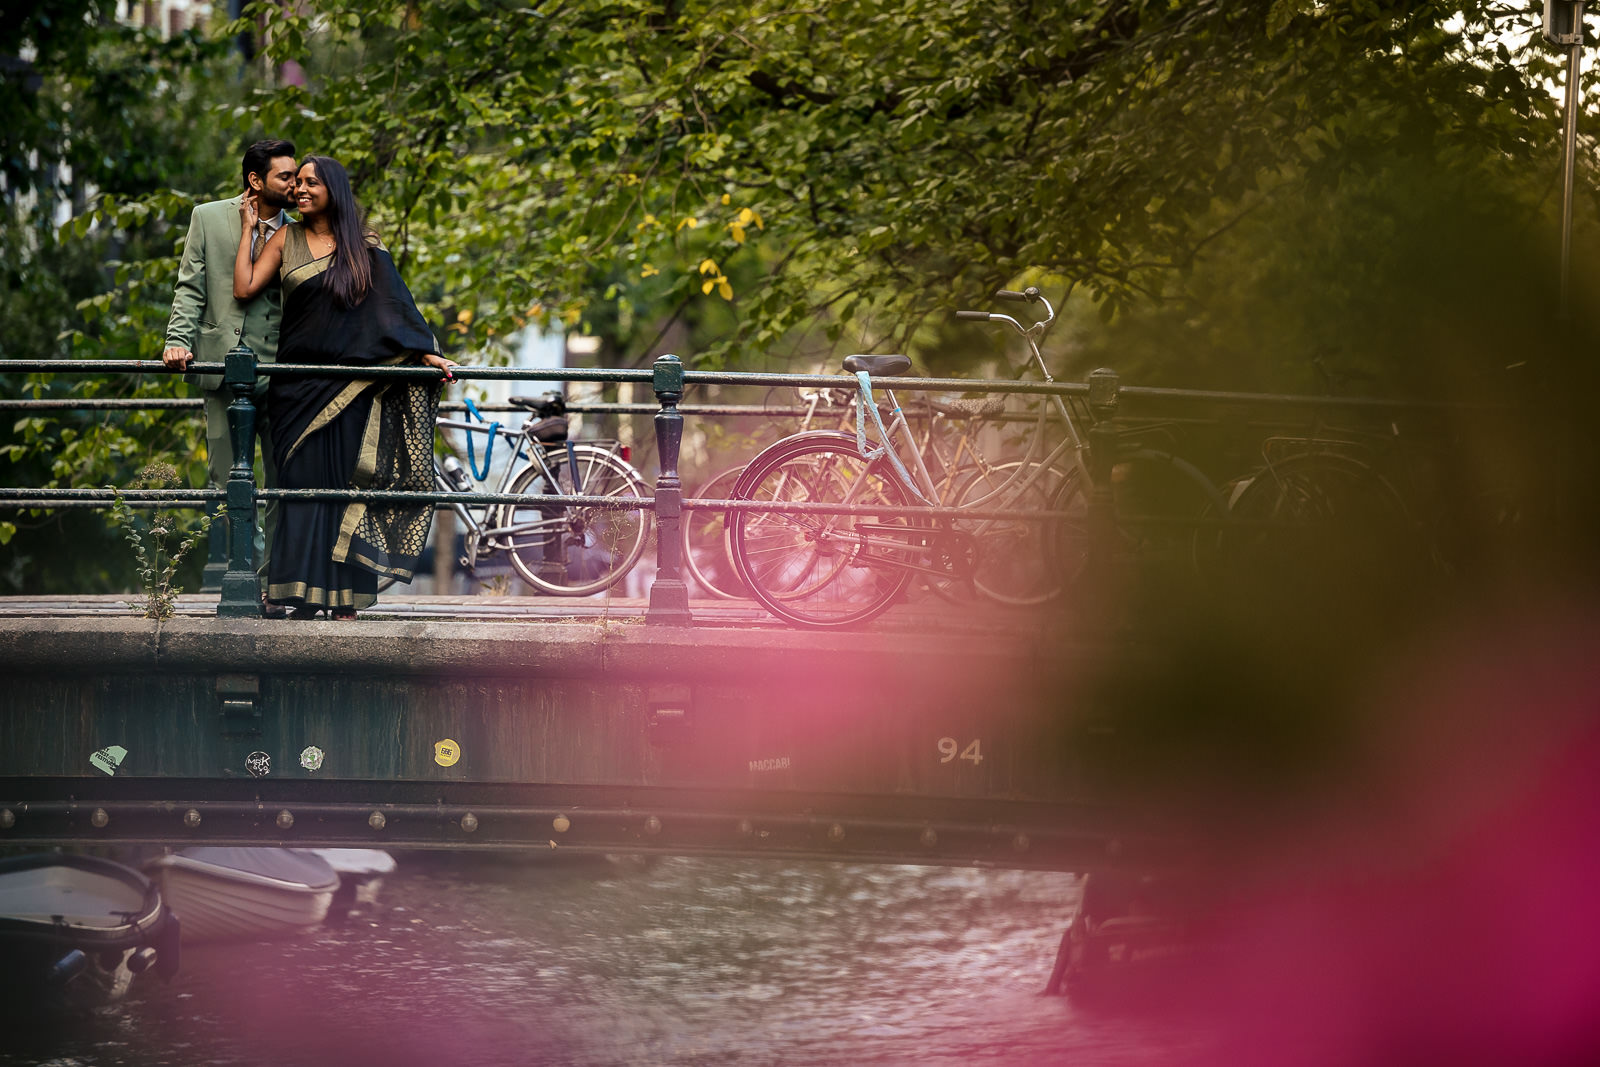 Loveshoot in Amsterdam Trouw fotograaf Amsterdam Paco van Leeuwen kanaal brug